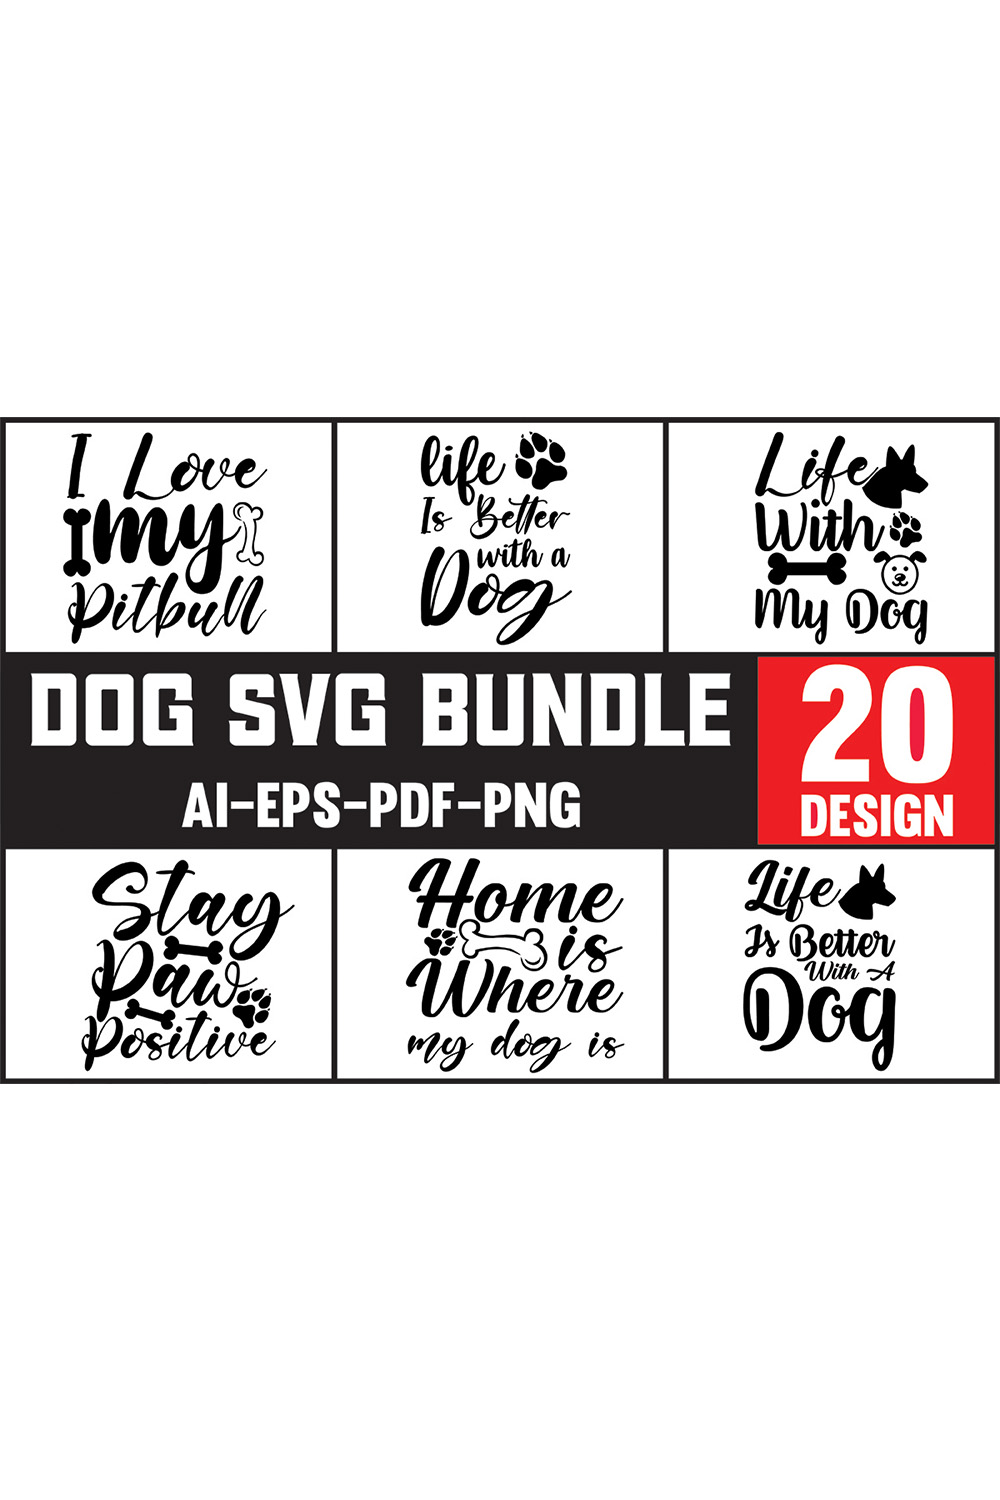 The dog svg bundle includes 20 designs.